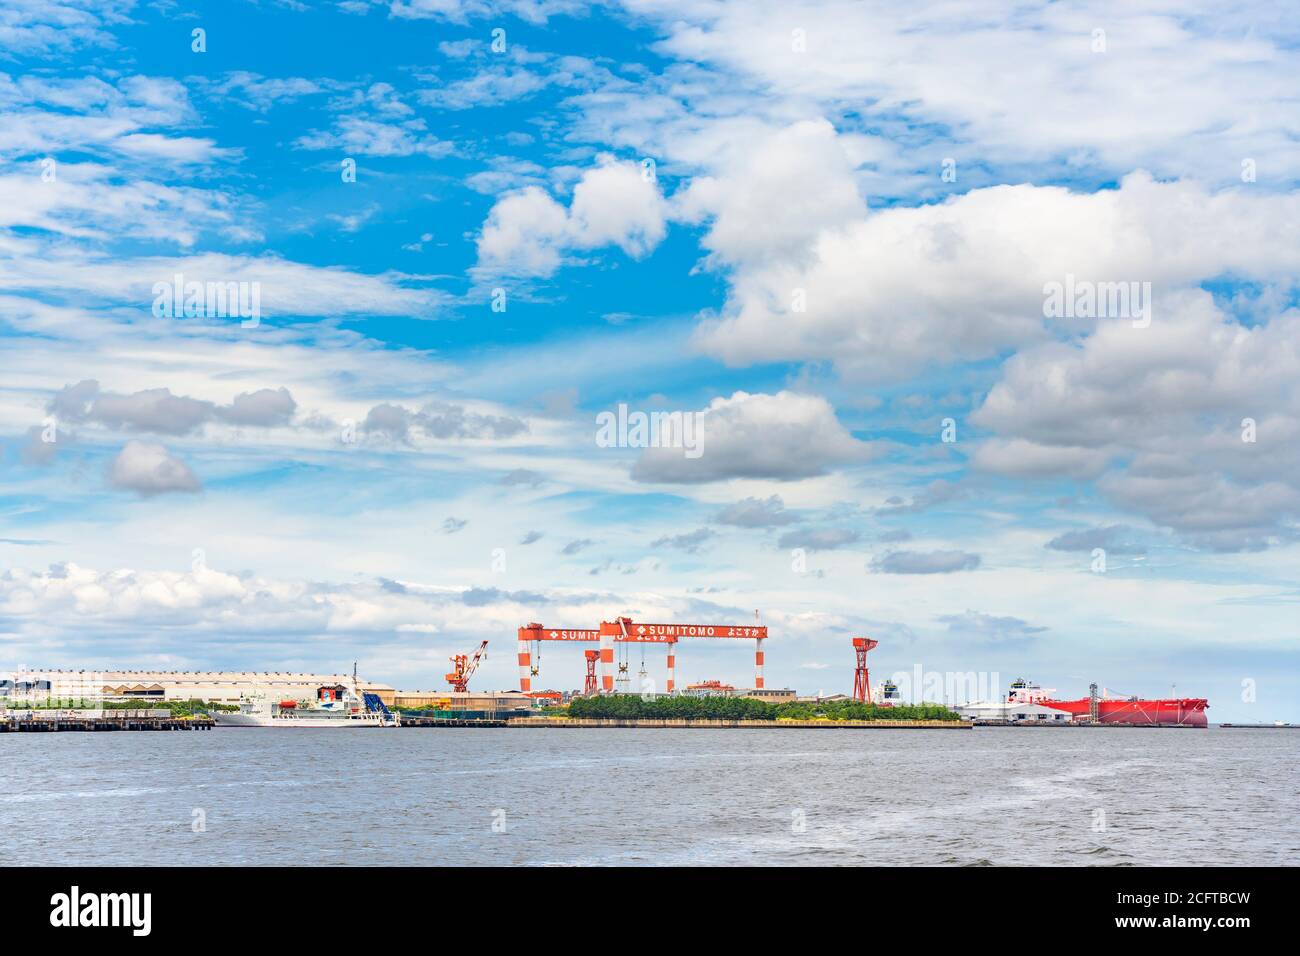 yokosuka, giappone - luglio 19 2020: Gru a torre delle banchine secche del cantiere navale Yokosuka Sumitomo Heavy Industries Marine & Engineering. Foto Stock